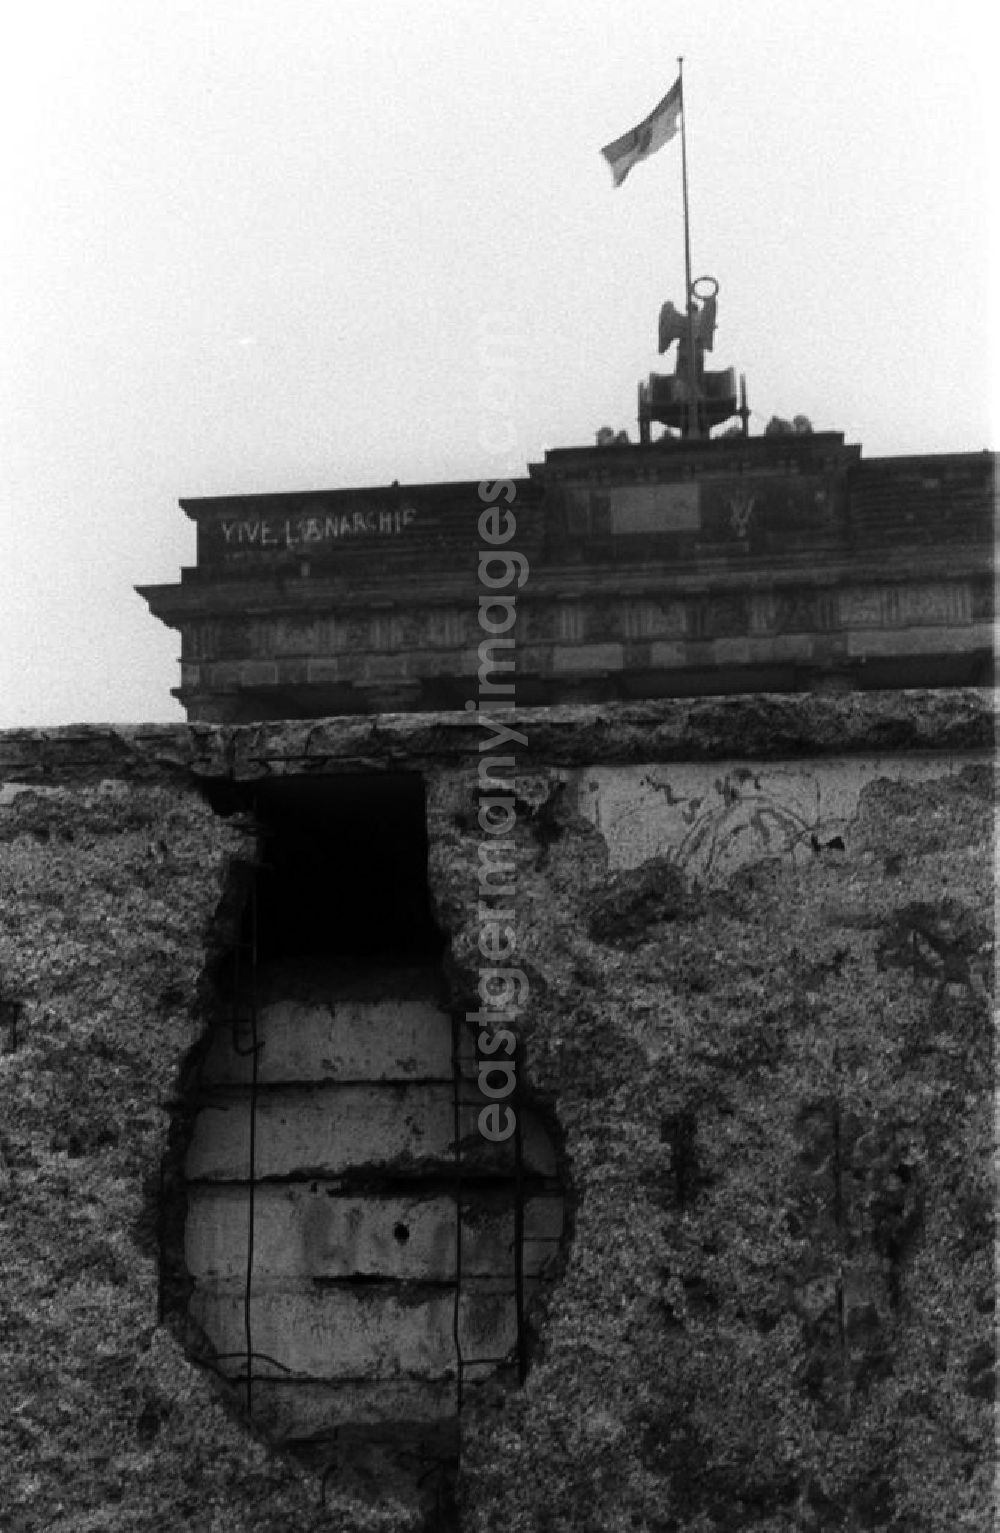 GDR photo archive: Berlin - Blick über die bereits löschrige Mauer auf das Brandenburger Tor. Als Erinnerung wurden gern Stücke der Mauer mitgenommen, so entstanden die Löscher, sie hießen auch Mauerspechte.